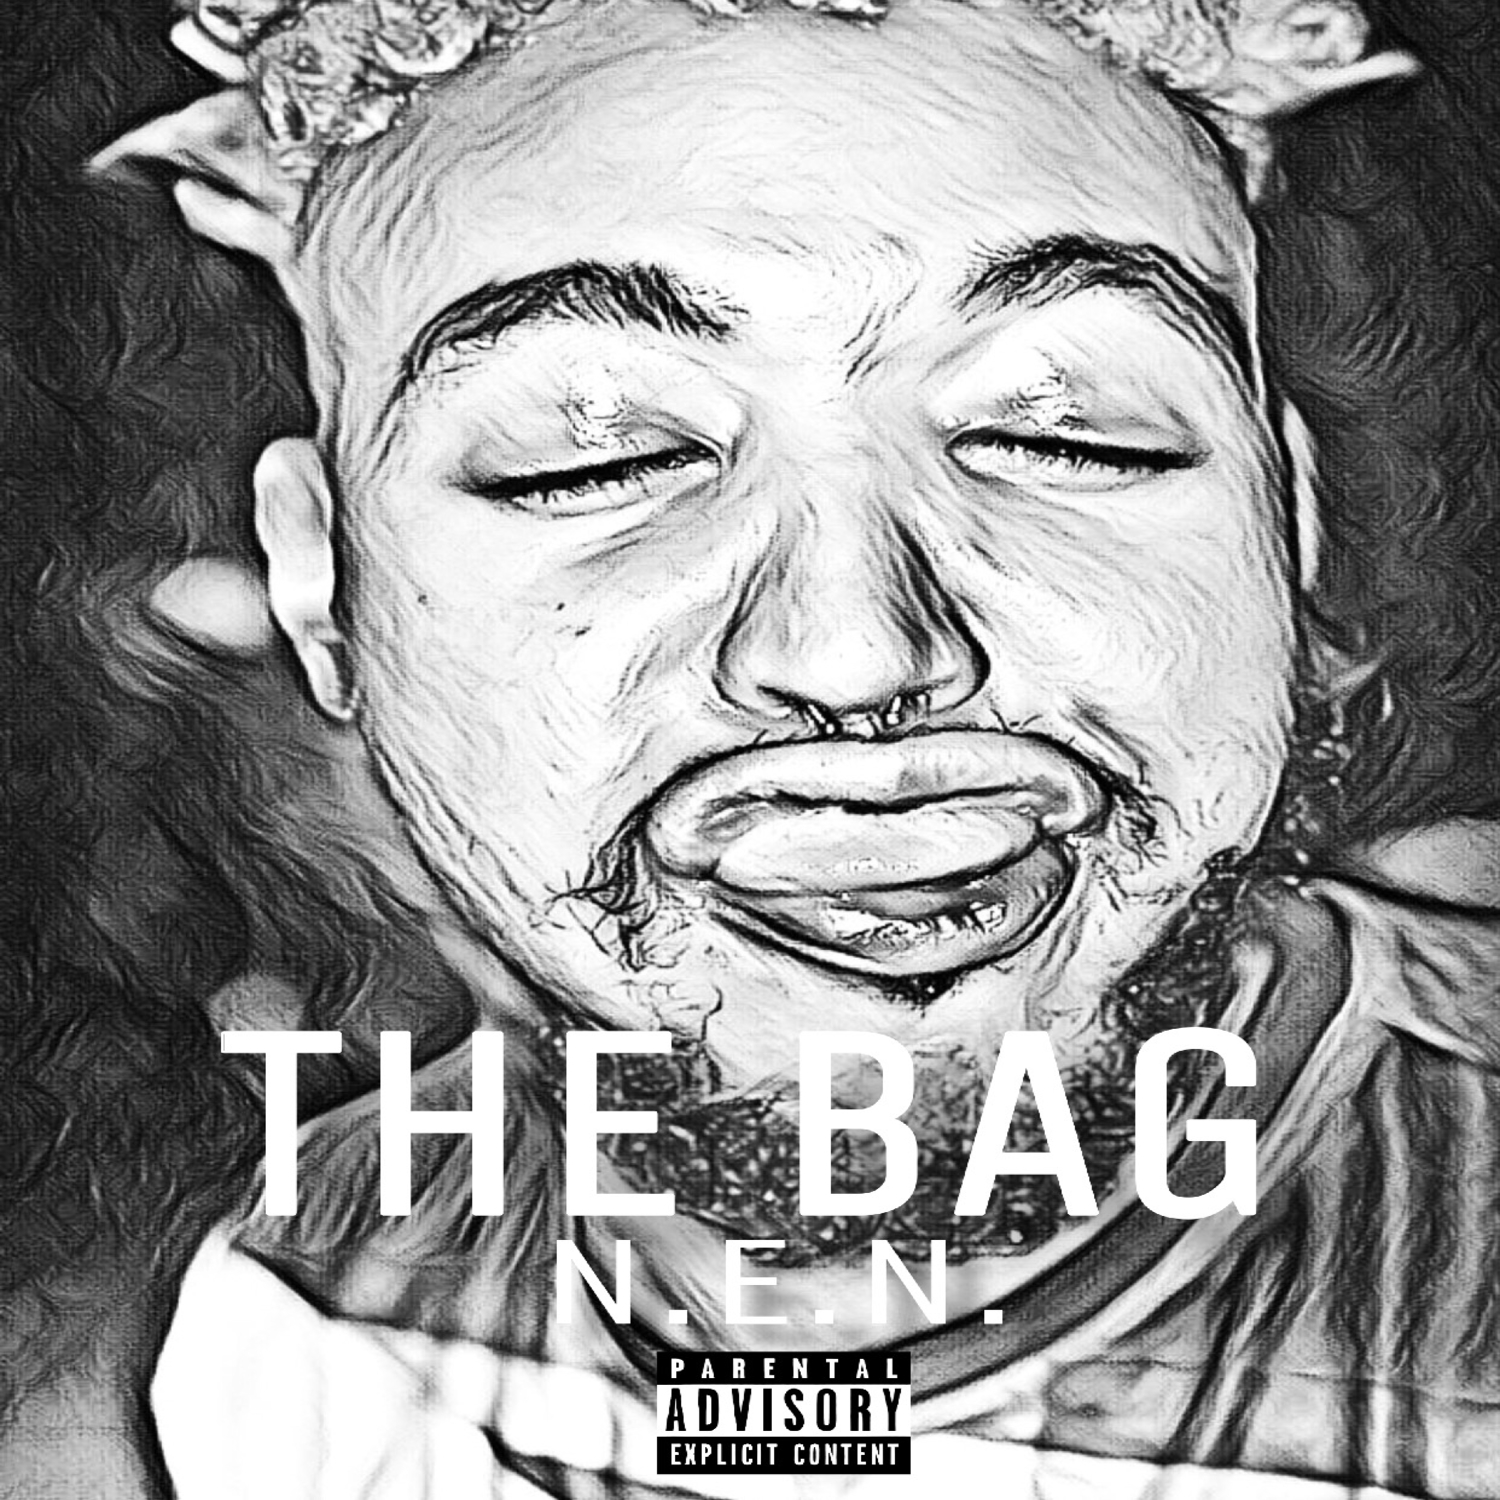 The Bag